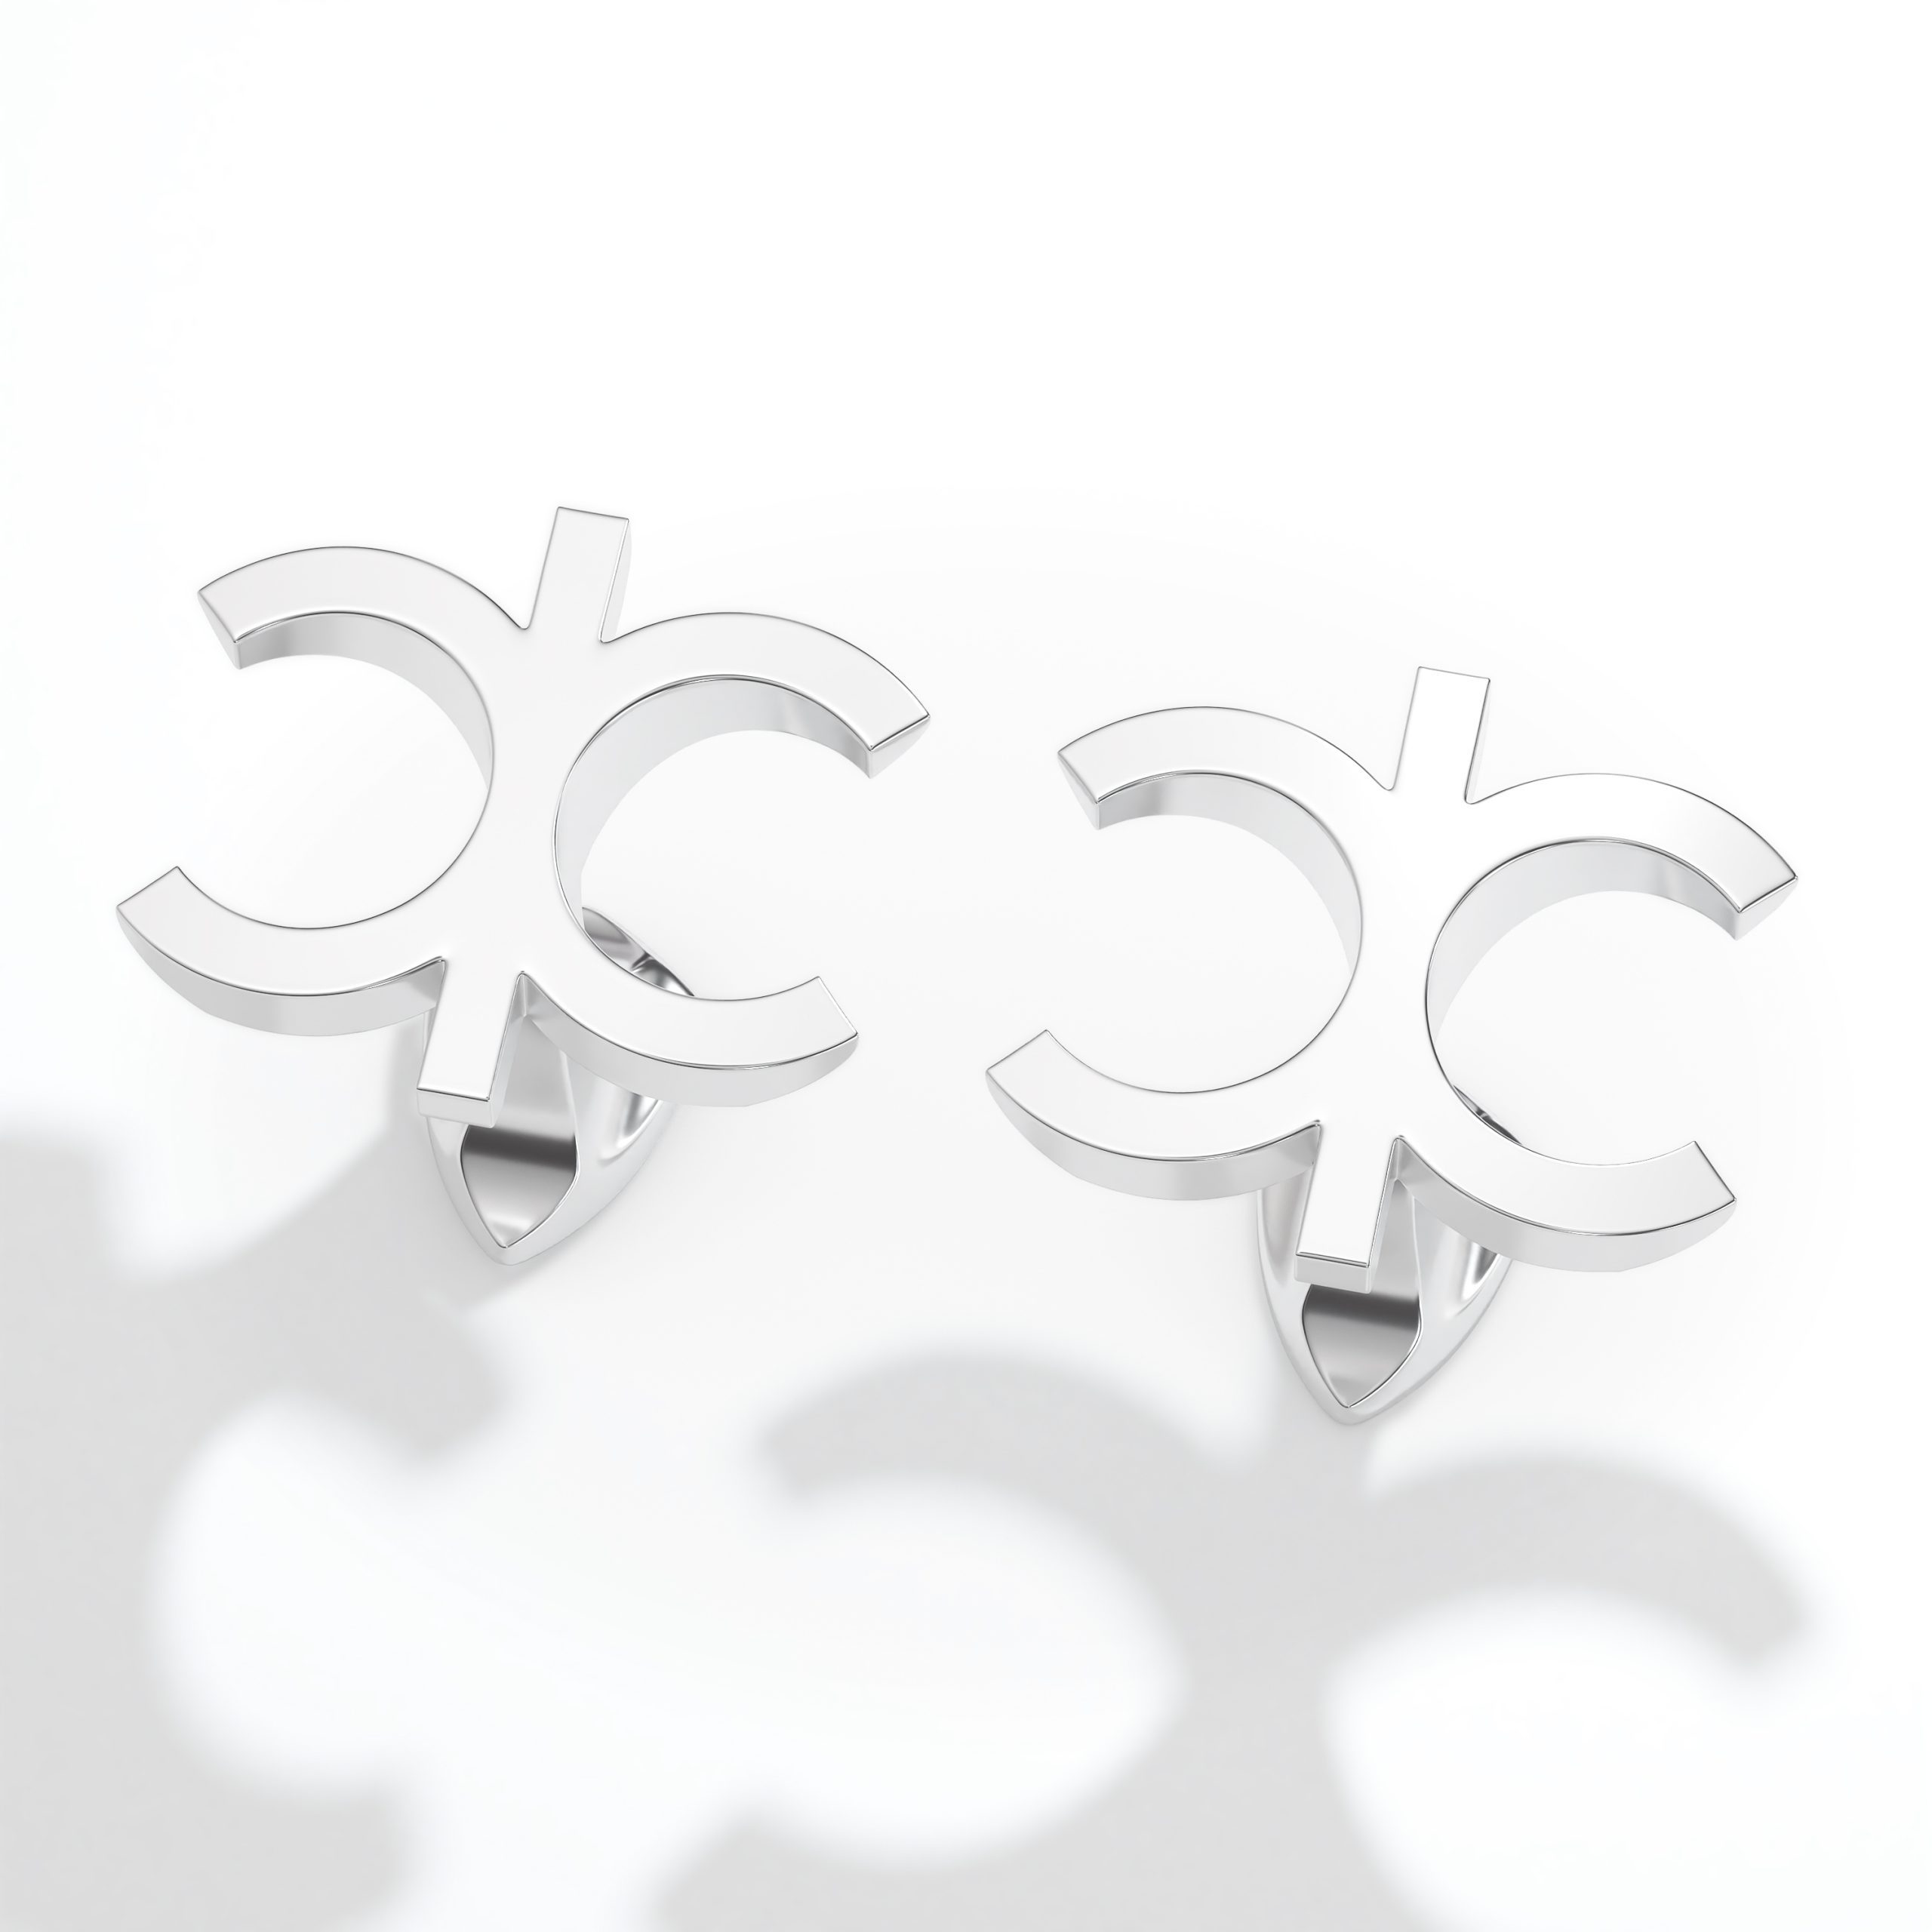 Silver CC cufflinks